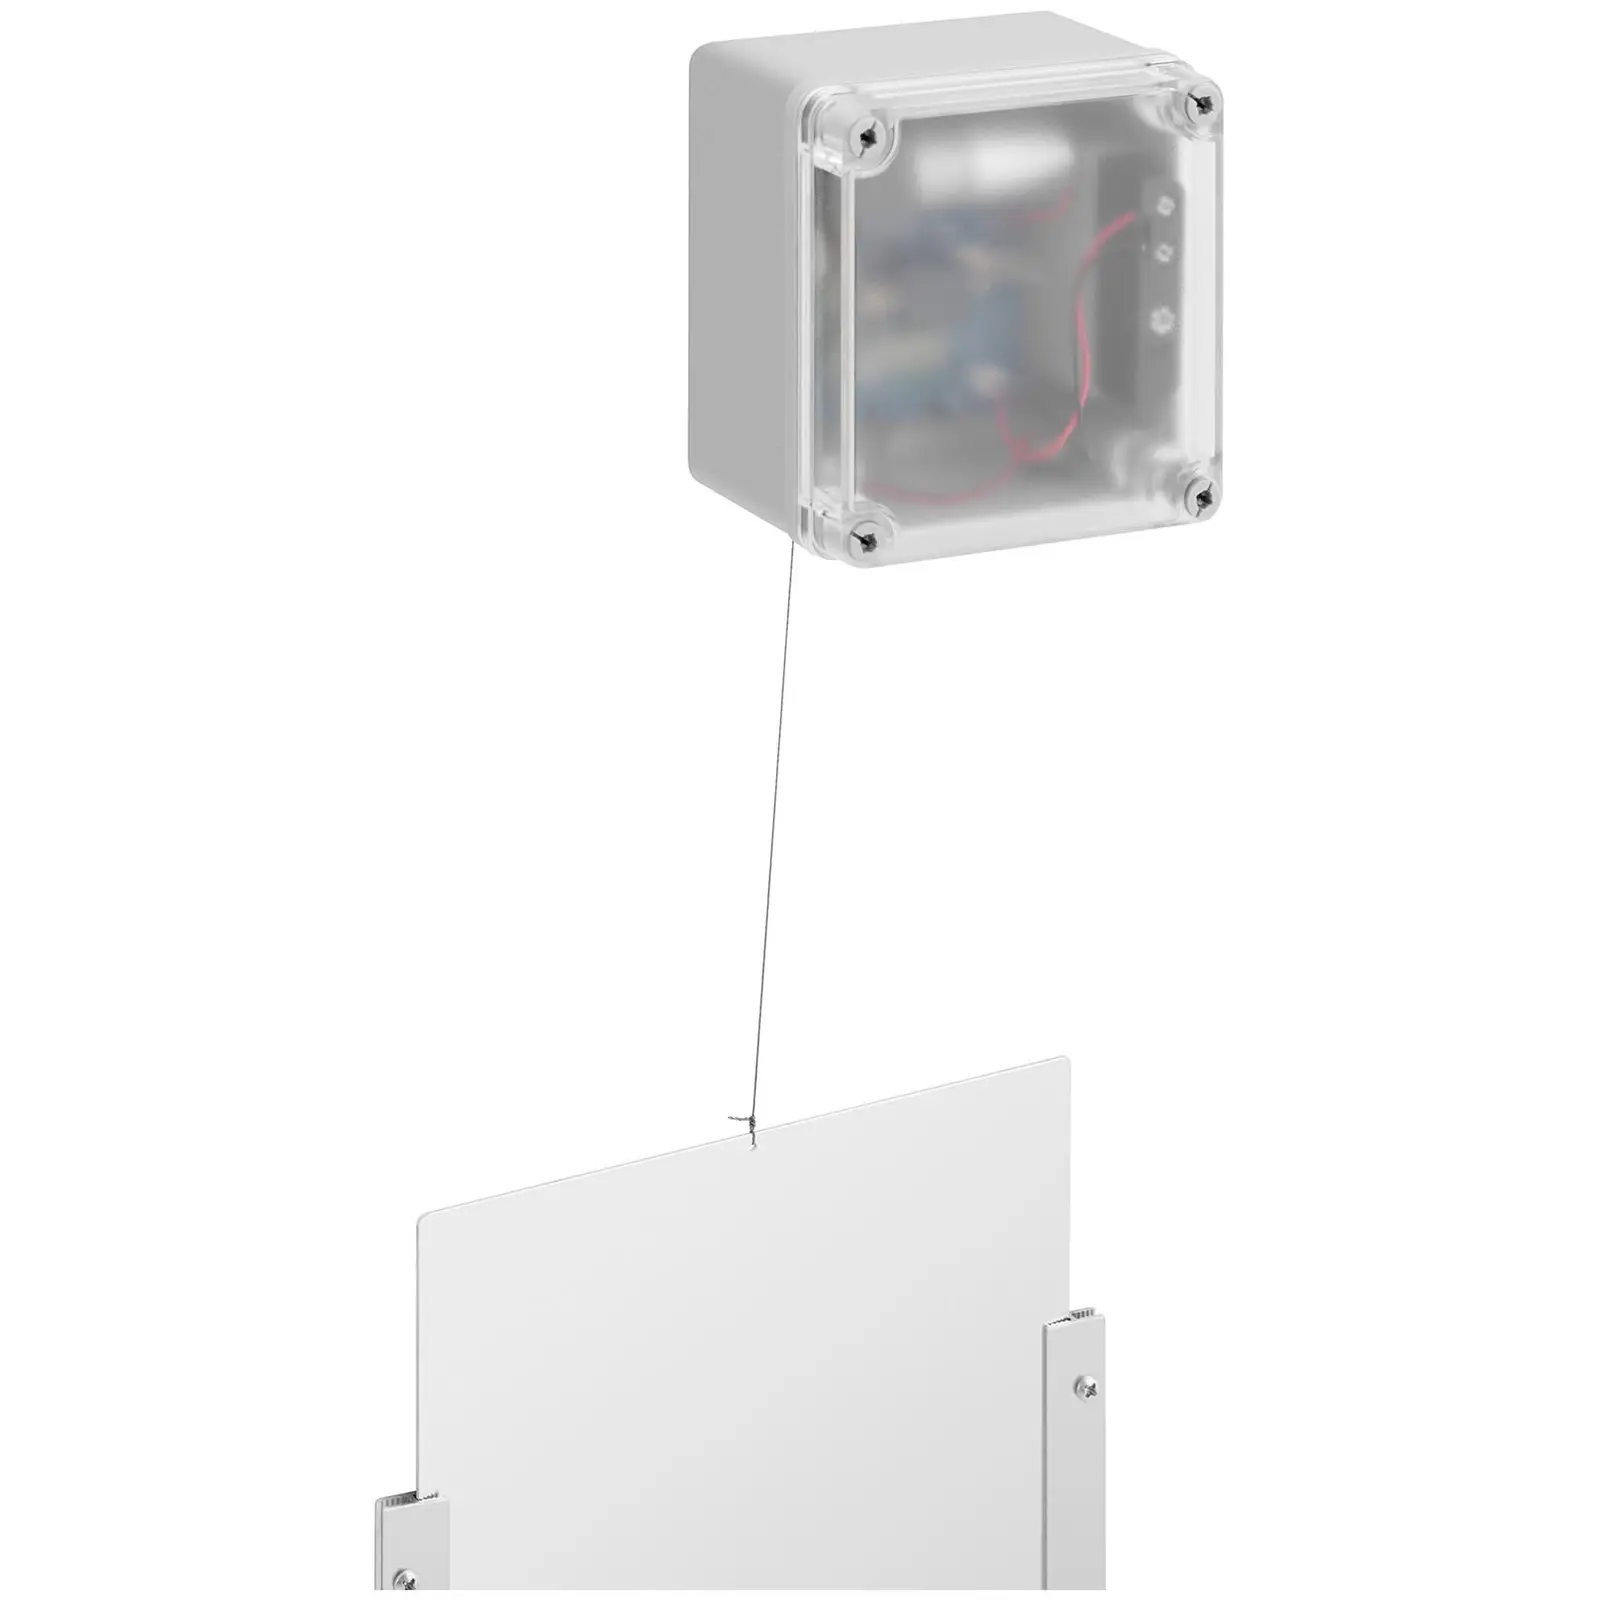 Puerta automática para gallinero - temporizador / sensor de luz - pilas + fuente de alimentación 